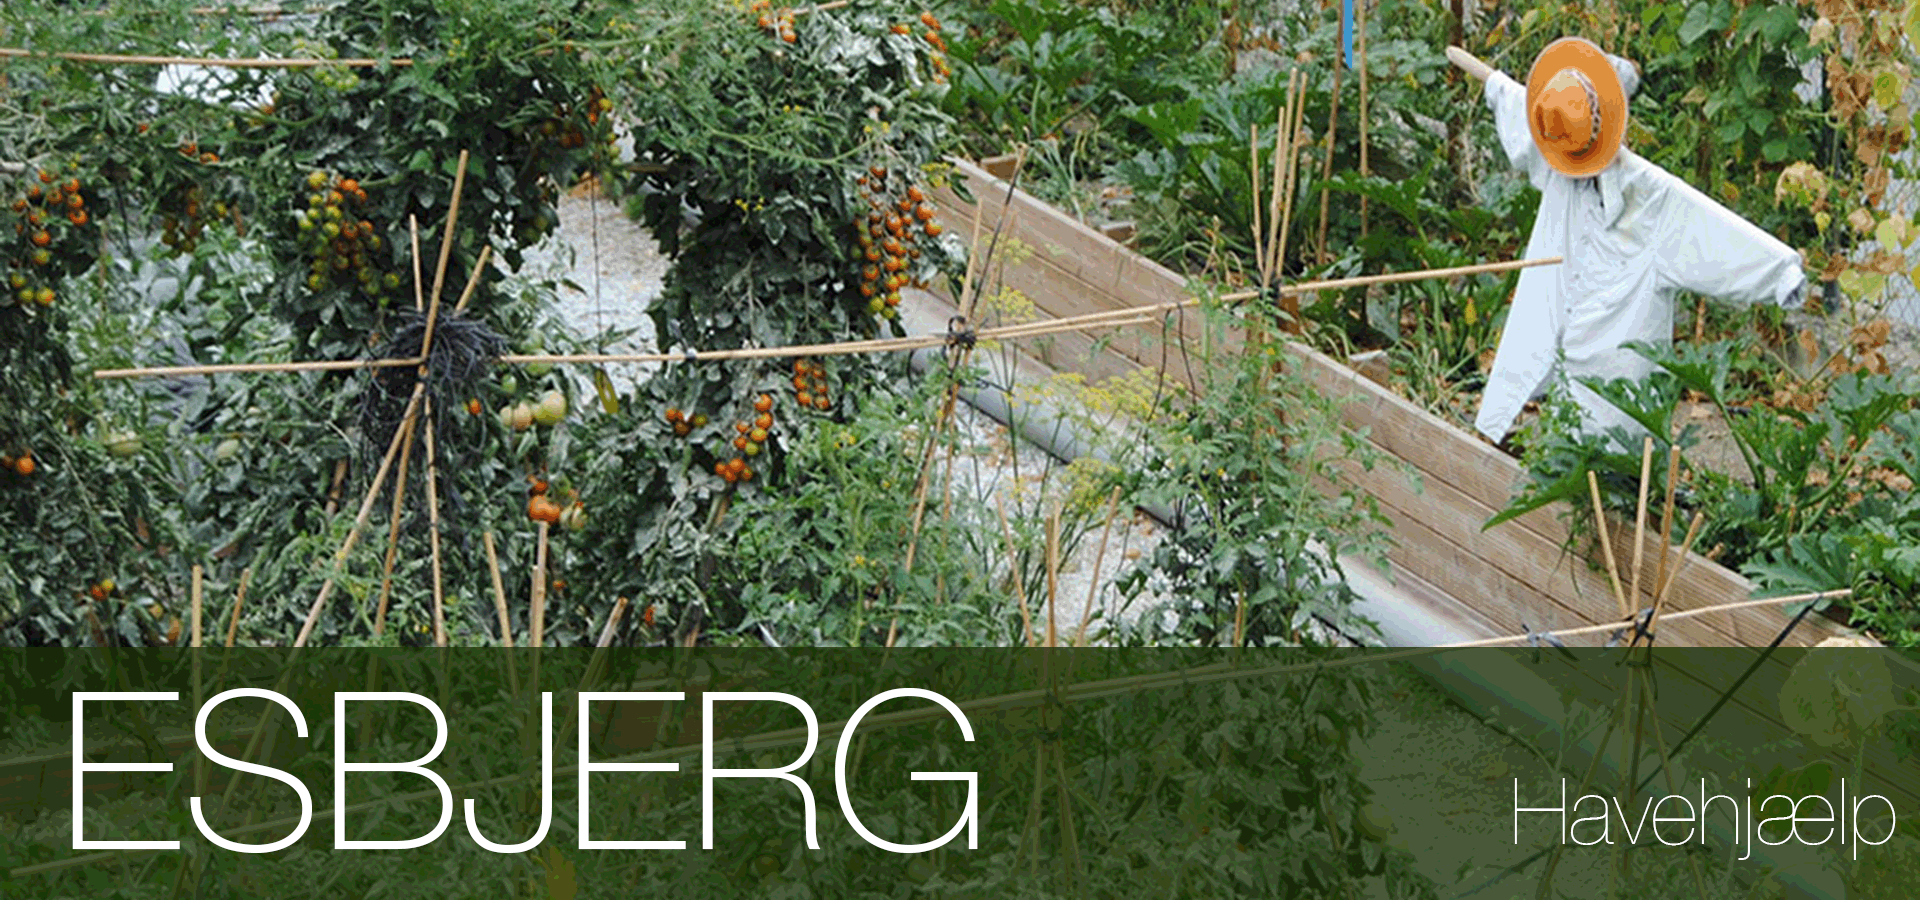 Havearbejde udføres Esbjerg